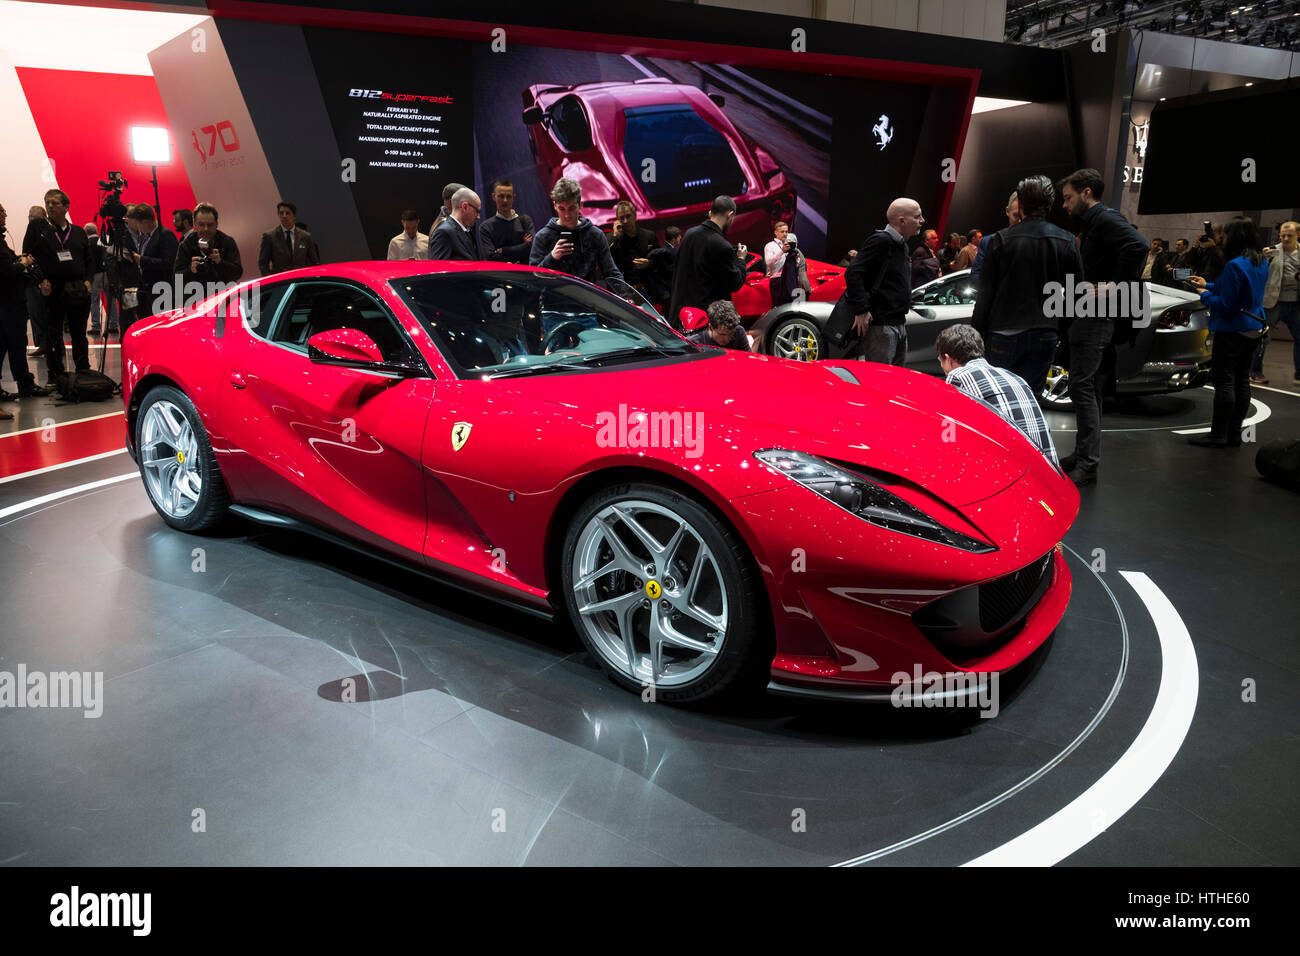 Lancement de Ferrari 812 Superfast au 87e Salon International de l'Automobile à Genève Suisse 2017 Banque D'Images